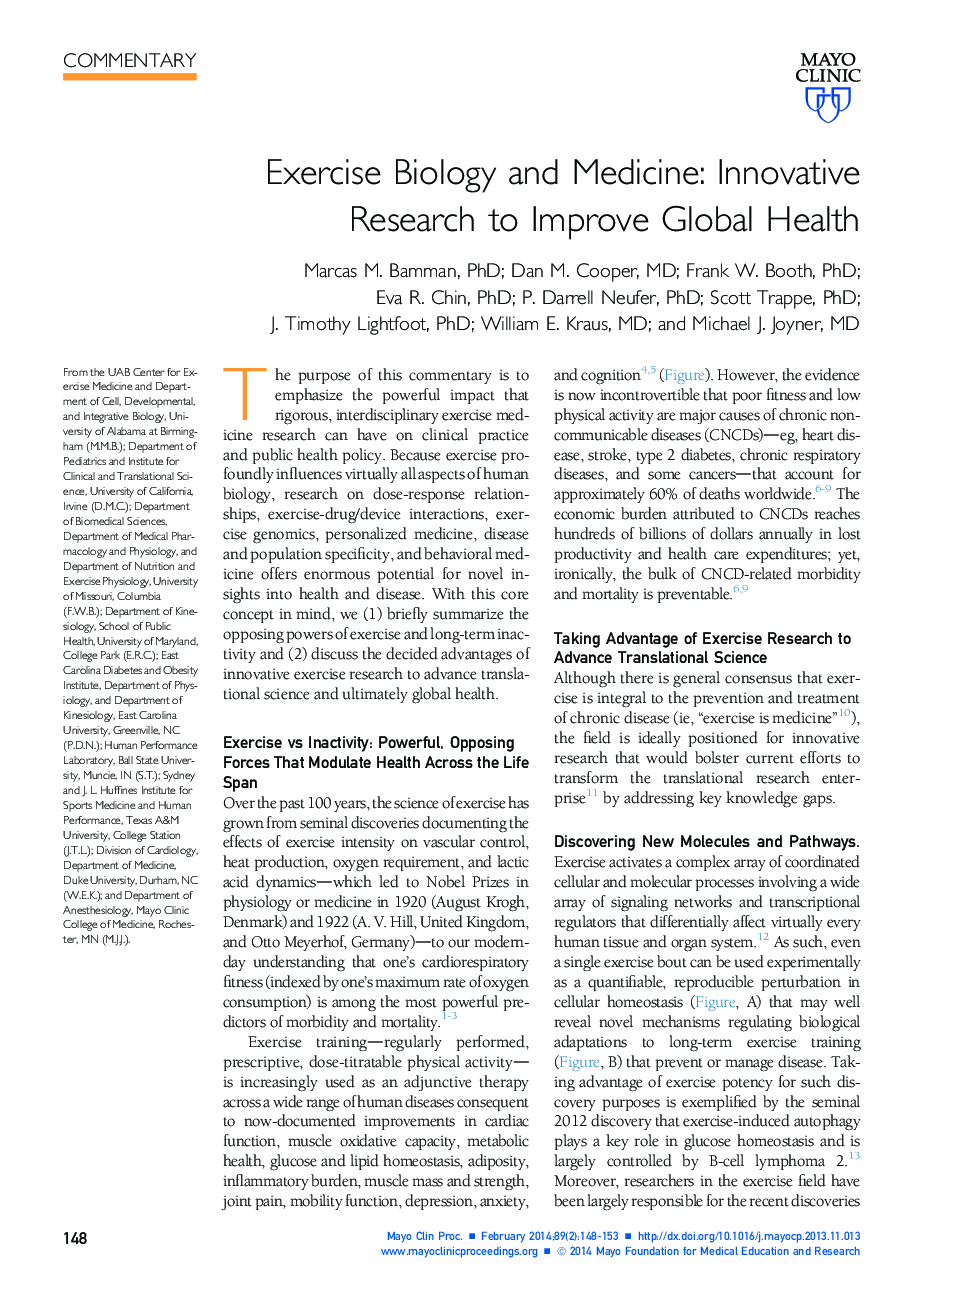 زیست شناسی و پزشکی: تحقیقات نوآورانه برای بهبود سلامت جهانی 